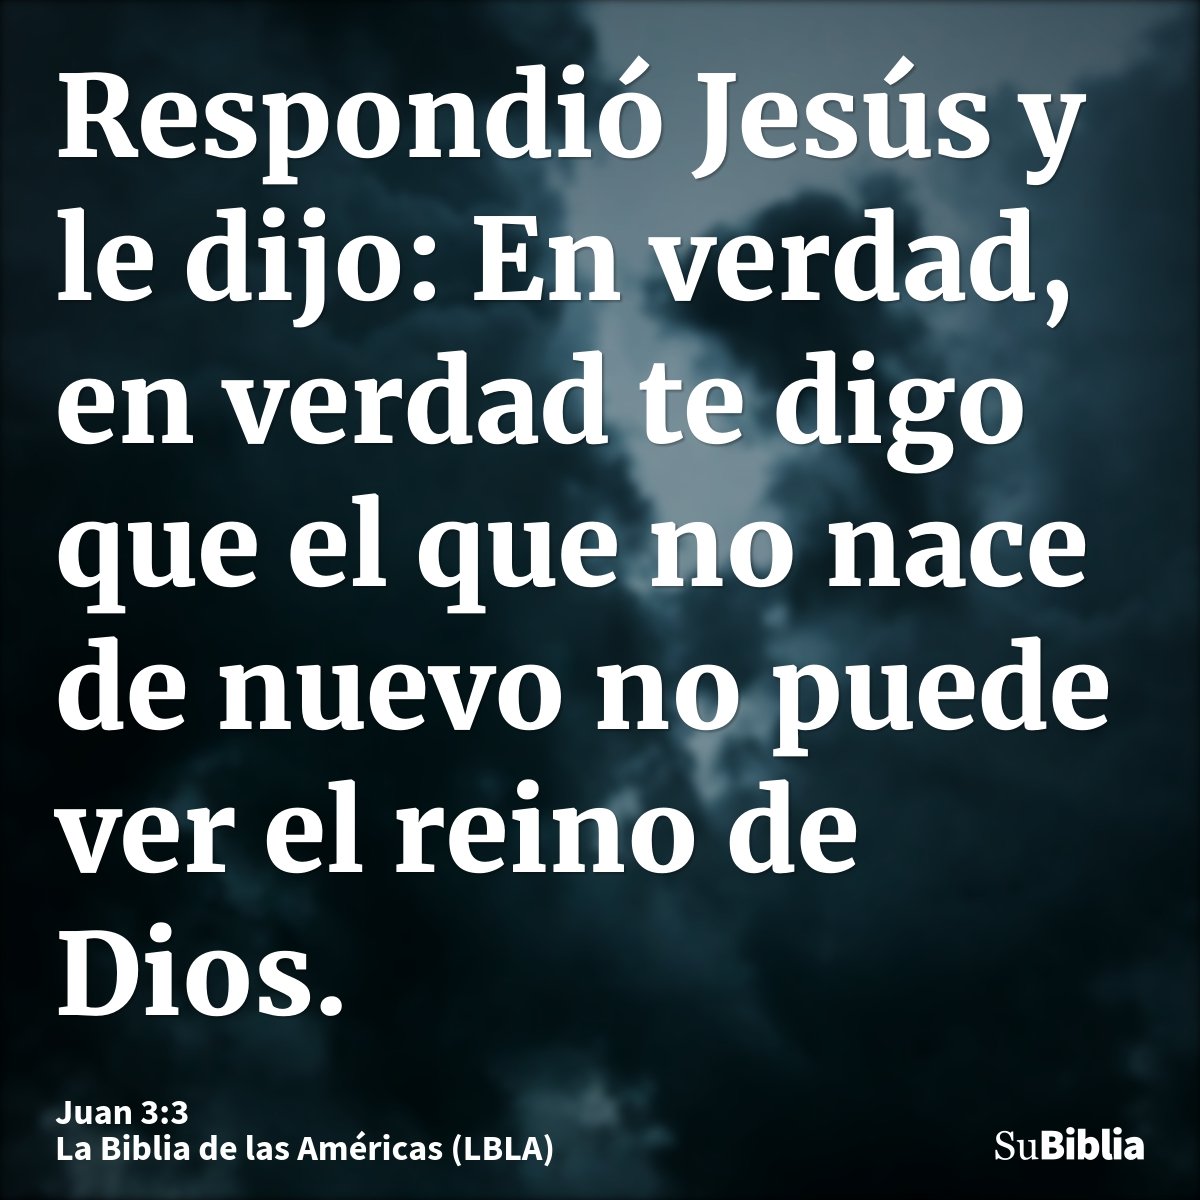 Respondió Jesús y le dijo: En verdad, en verdad te digo que el que no nace de nuevo no puede ver el reino de Dios.